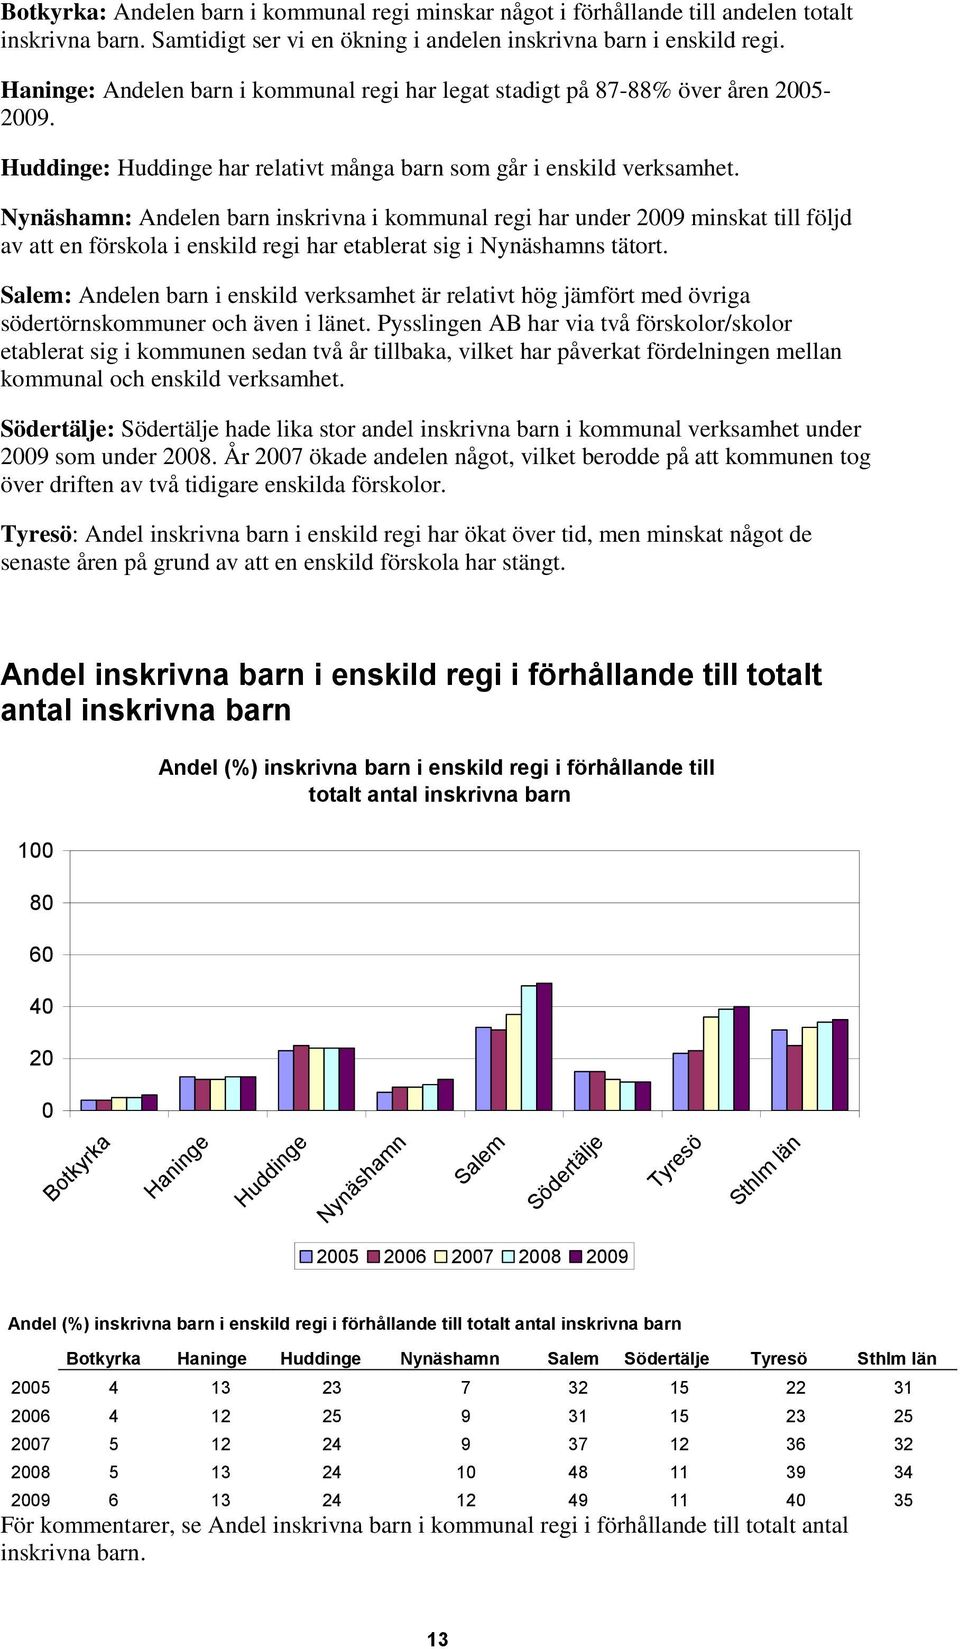 Nynäshamn: Andelen barn inskrivna i kommunal regi har under 2009 minskat till följd av att en förskola i enskild regi har etablerat sig i Nynäshamns tätort.